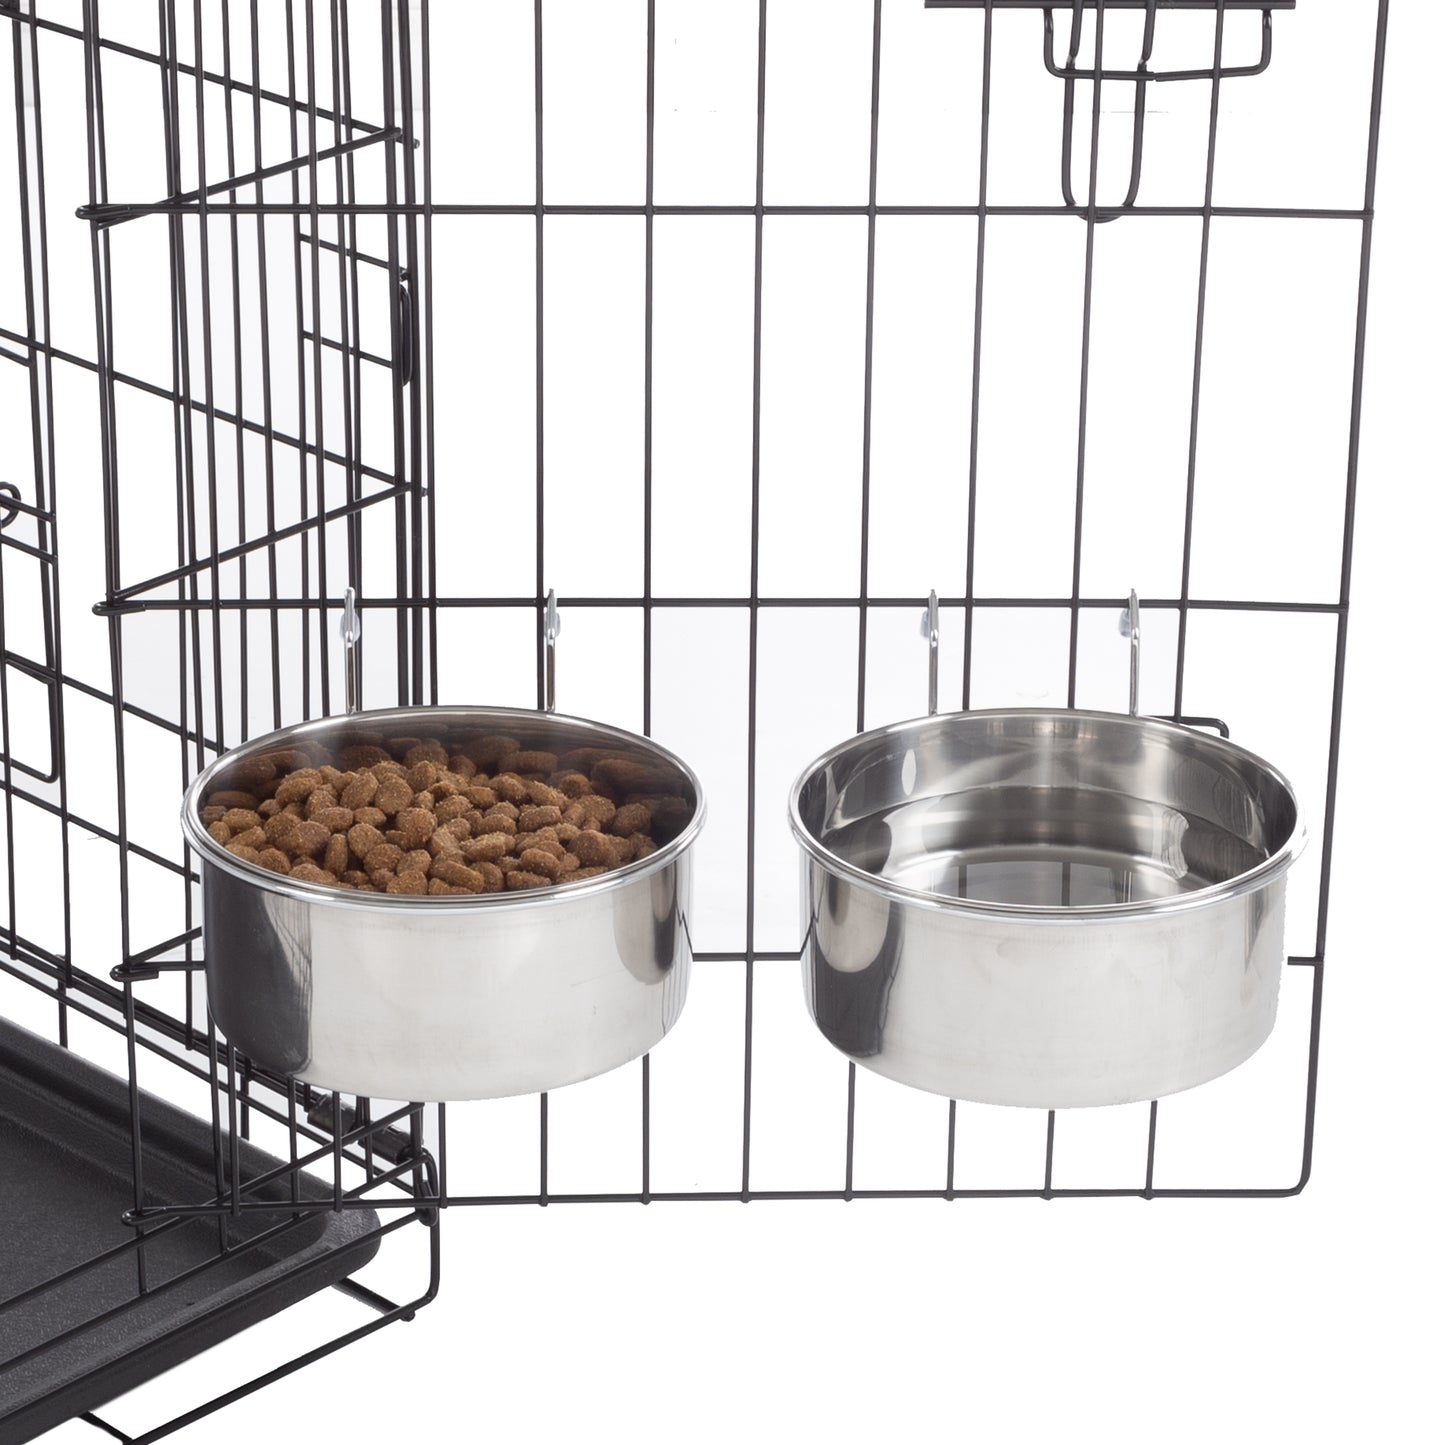 Stainless-Steel Hanging Dog Bowl Set